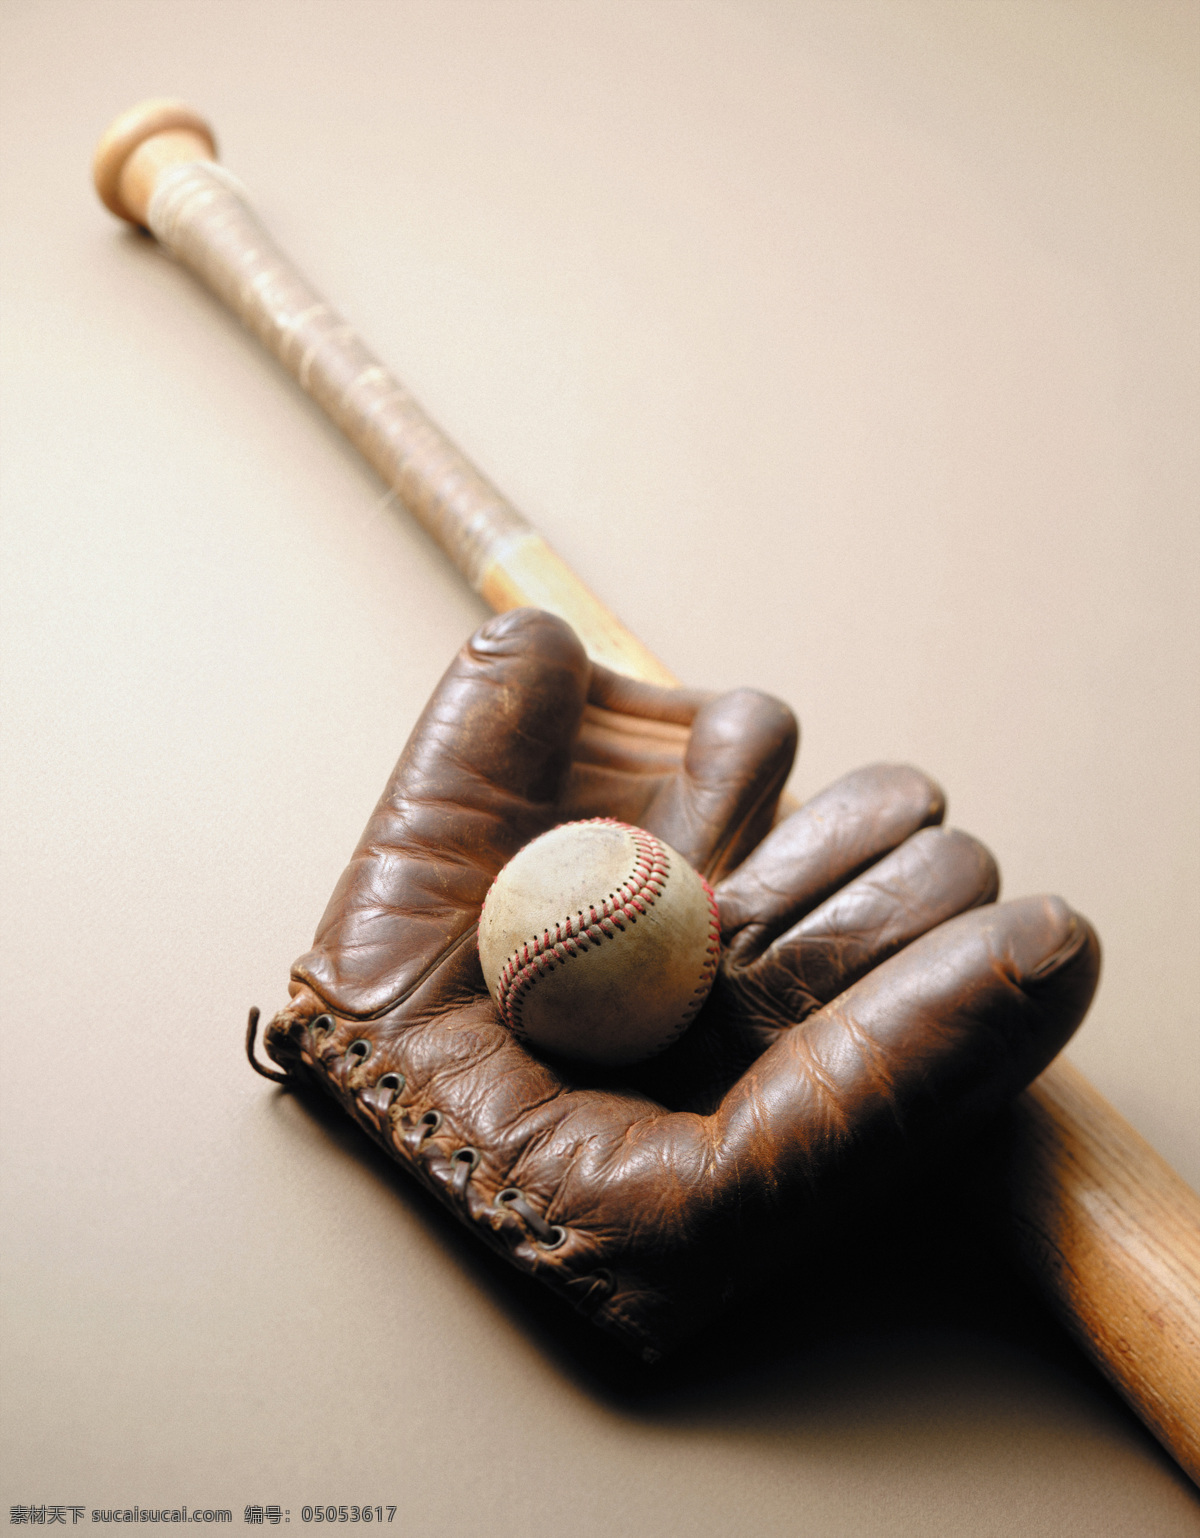 棒球手套 真皮棒球手套 棒球 棒球用品 棒球道具 体育用品 运动 体育 竞技 休闲 生活百科